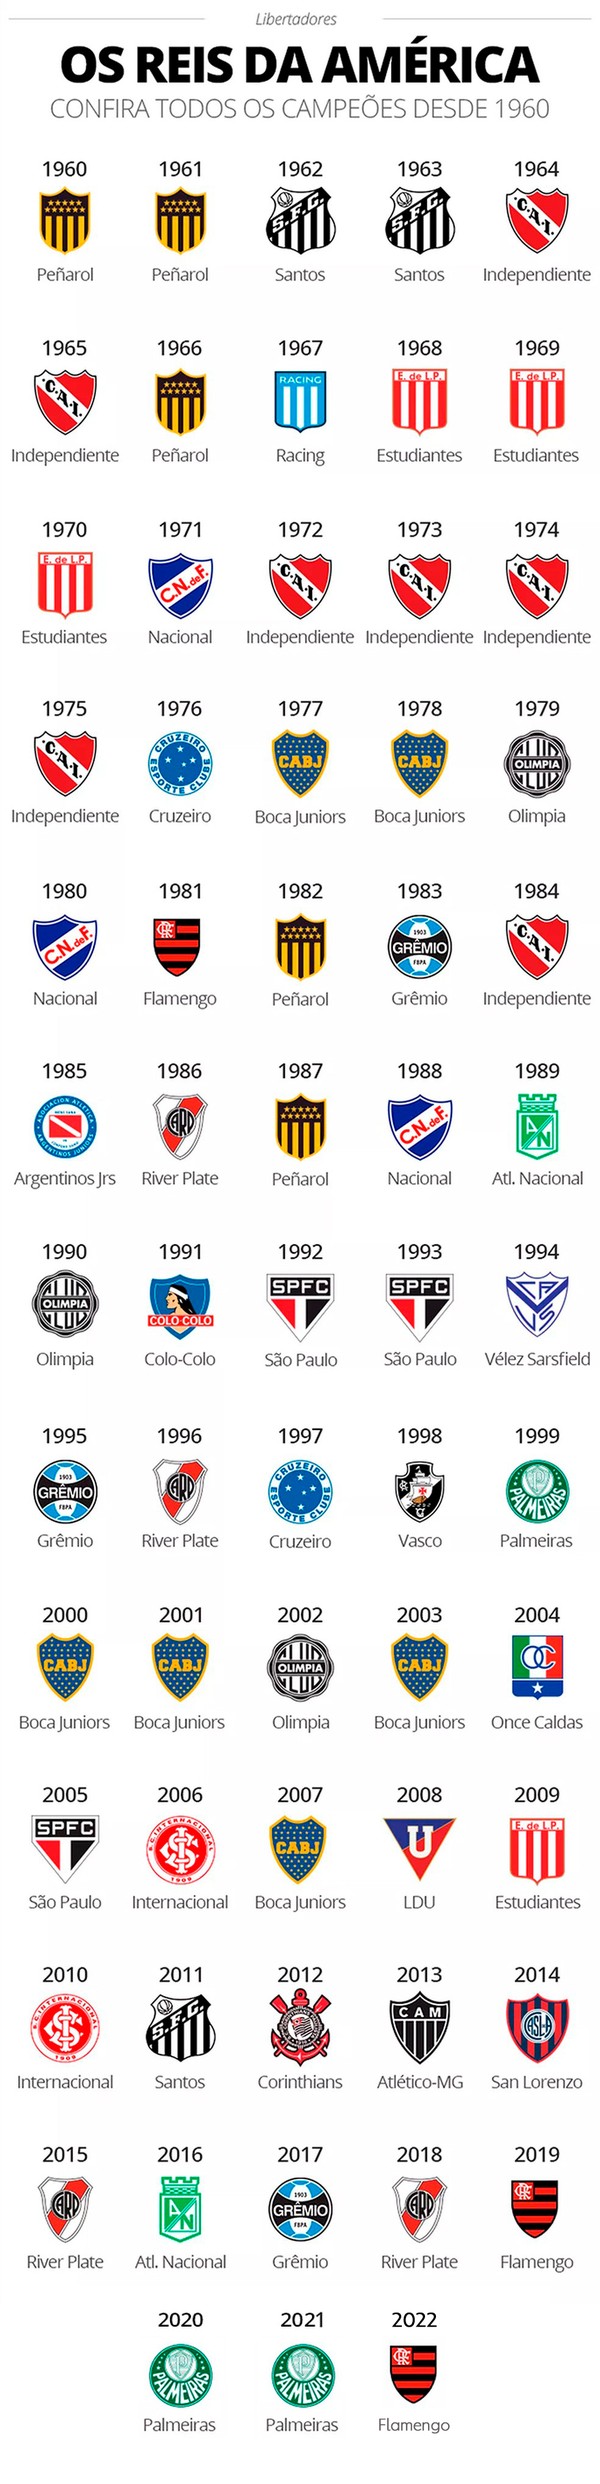 Quais times disputaram mais finais de Copa Libertadores?